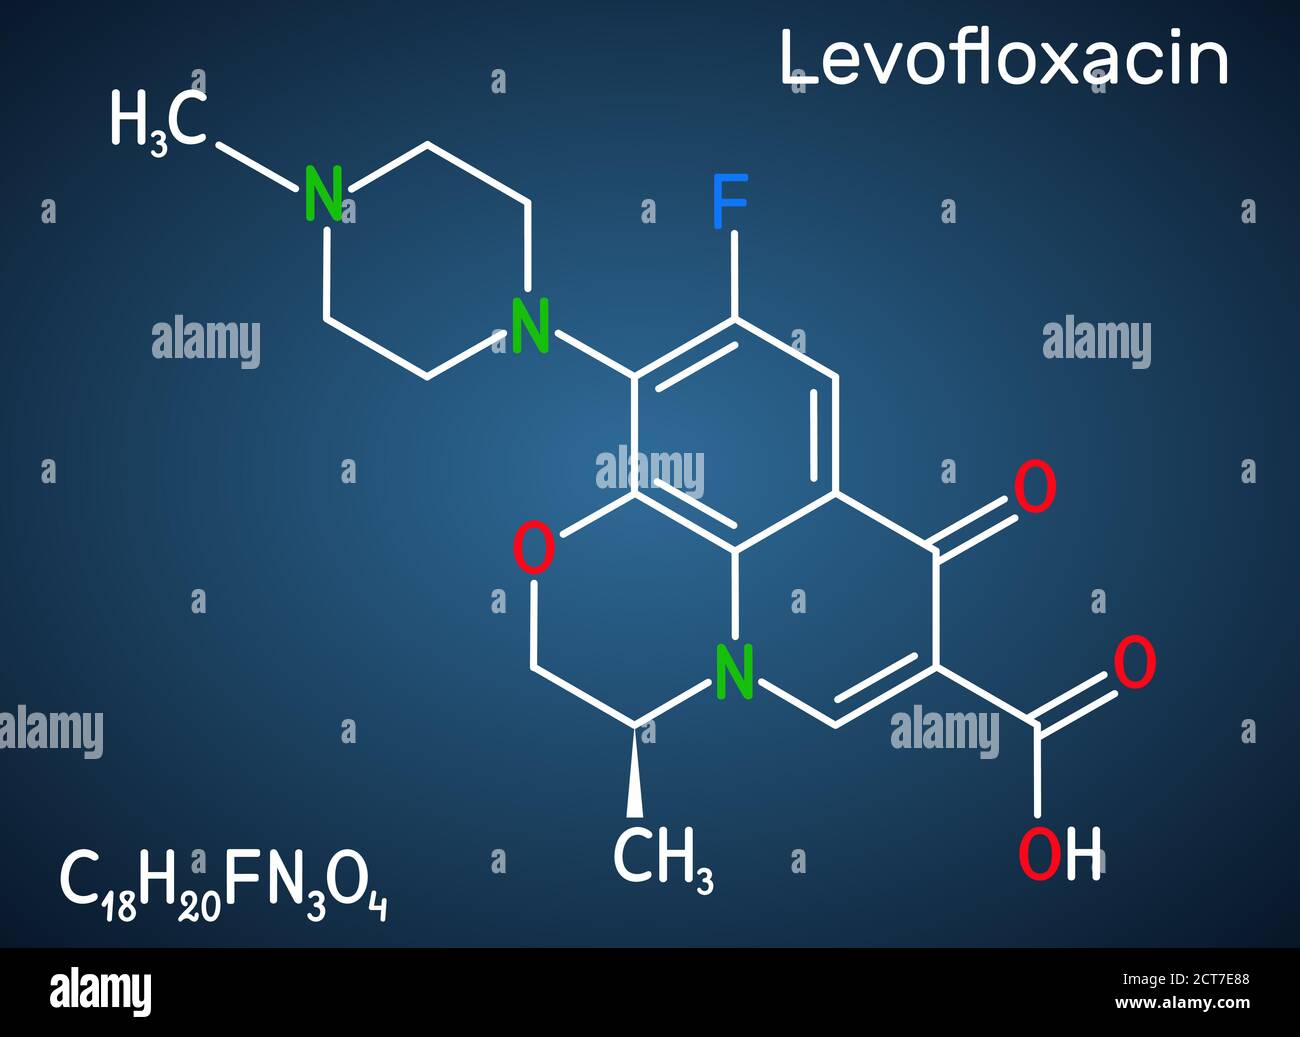 Levofloxacin, Fluorchinolon Antibiotikum Molekül. Es wird verwendet, um bakterielle Sinusitis, Lungenentzündung zu behandeln. Strukturelle chemische Formel auf der dunkelblauen BA Stock Vektor